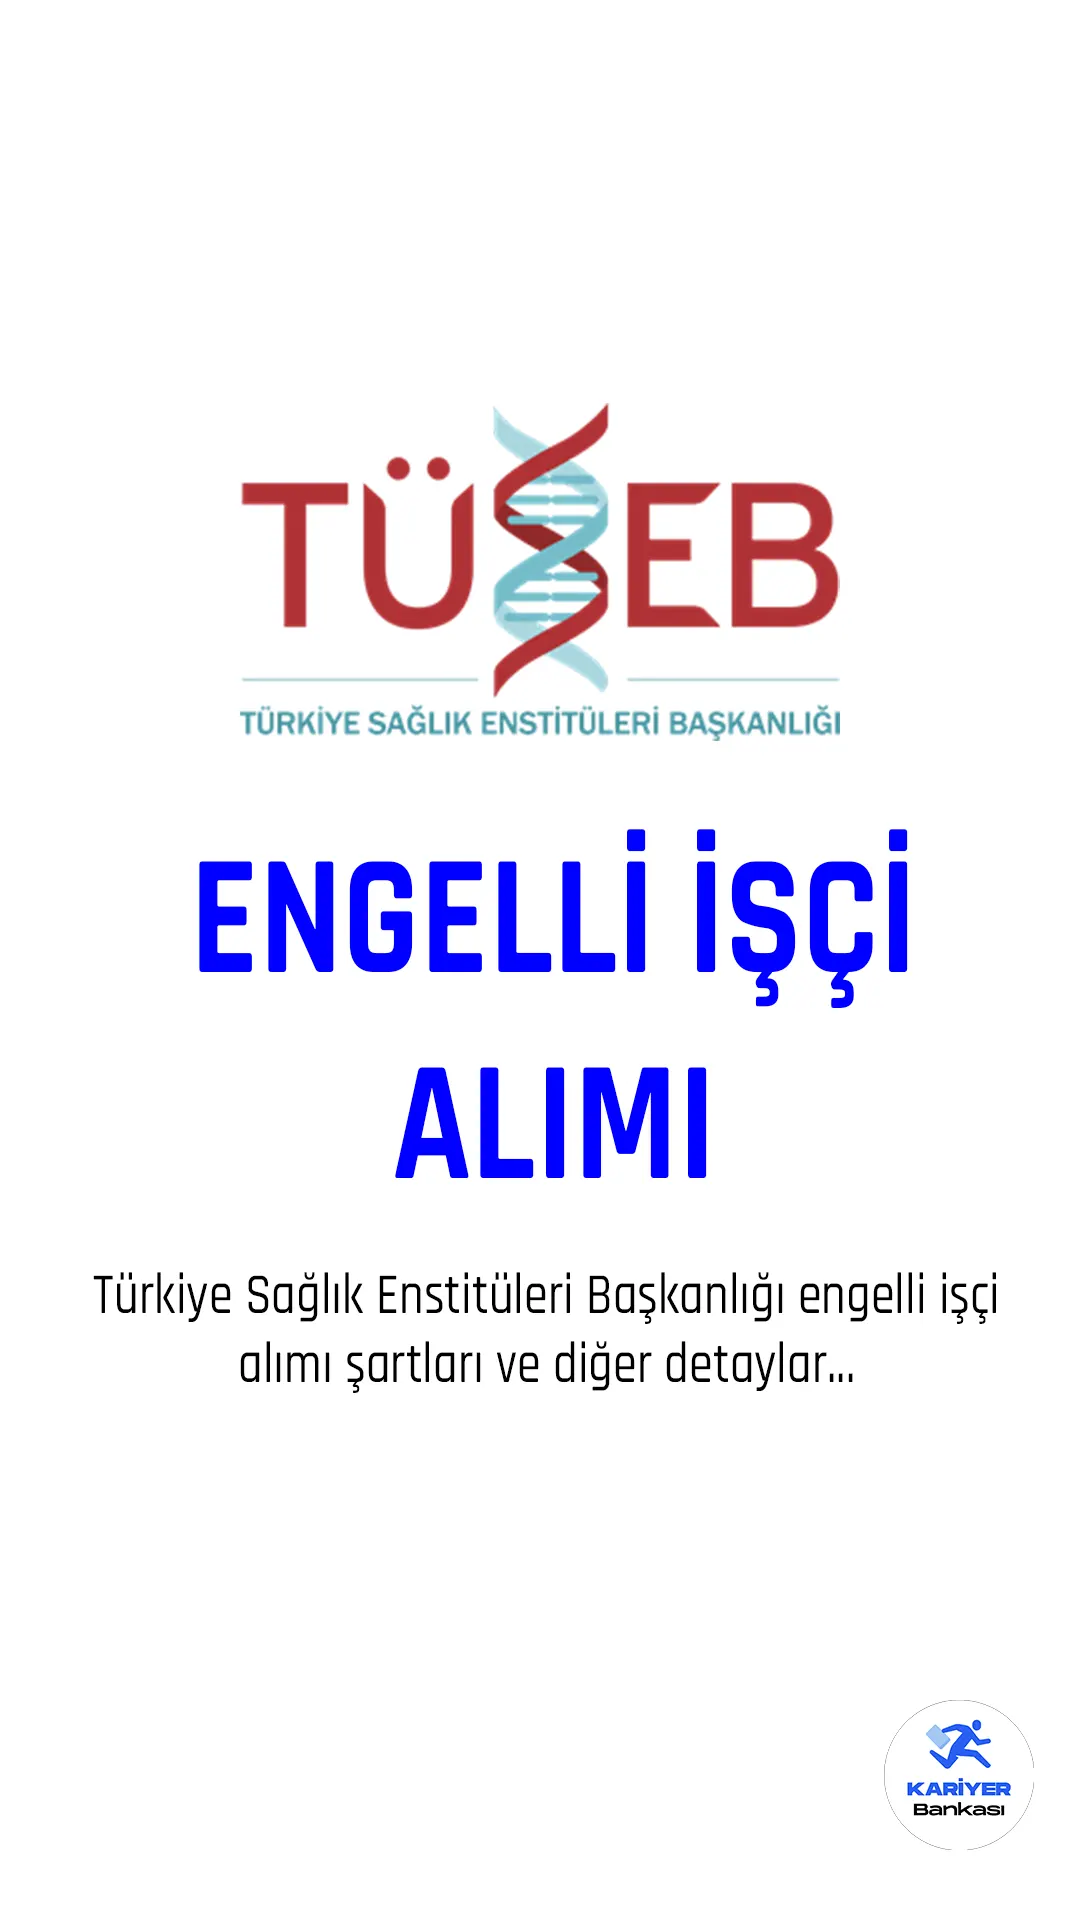 Türkiye Sağlık Enstitüleri Başkanlığı (TÜSEB), engelli işçi alımı yapacağını duyurdu. Alınacak işçiler, Veri Hazırlama ve Kontrol İşletmeni ile Programcı pozisyonlarında çalışacaklar.